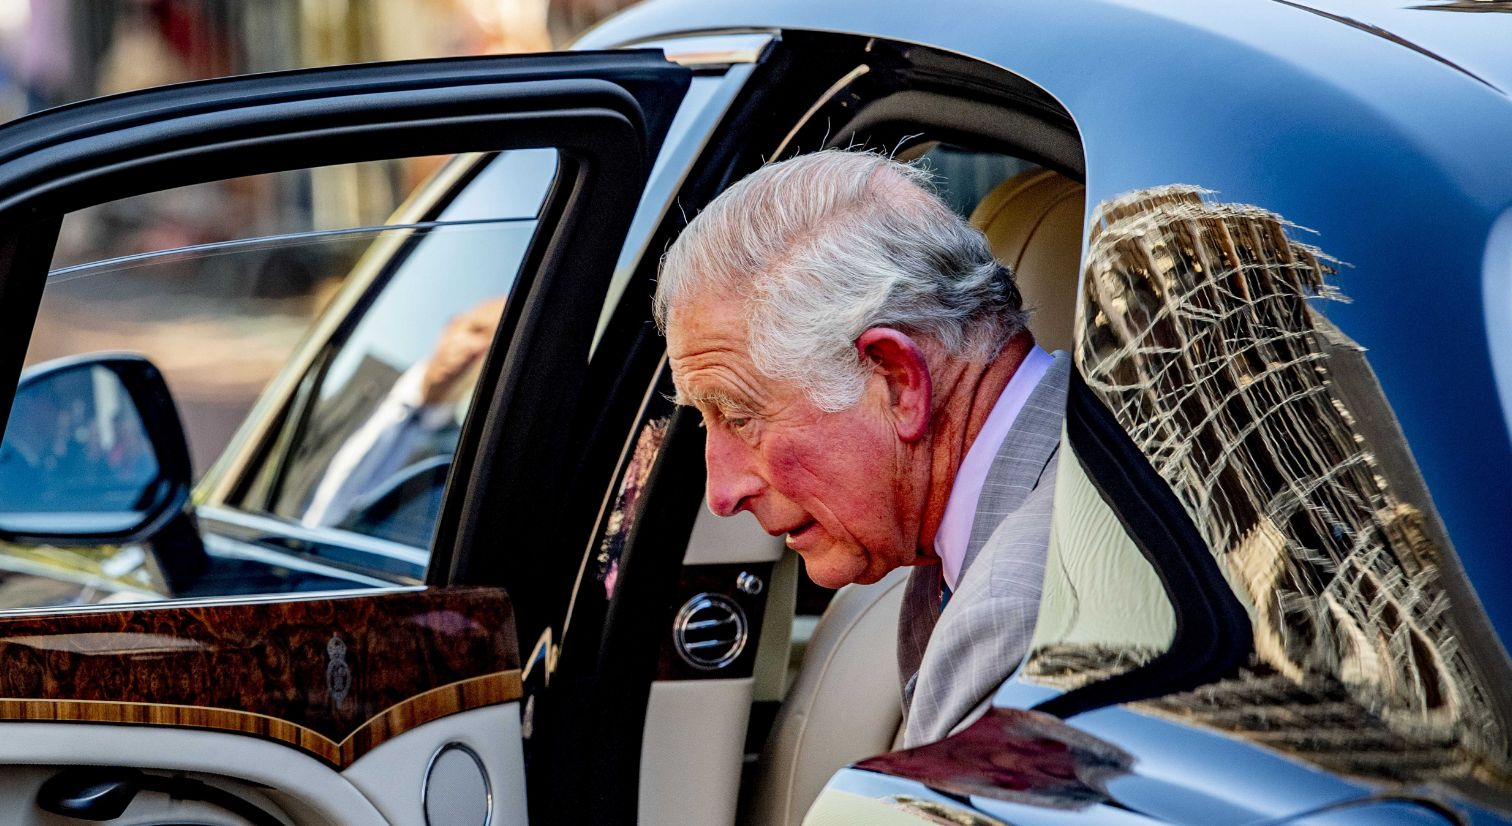 “Сънди таймс”: Крал Чарлз III замесен в корупционен скандал, Скотланд Ярд ще го разпитва